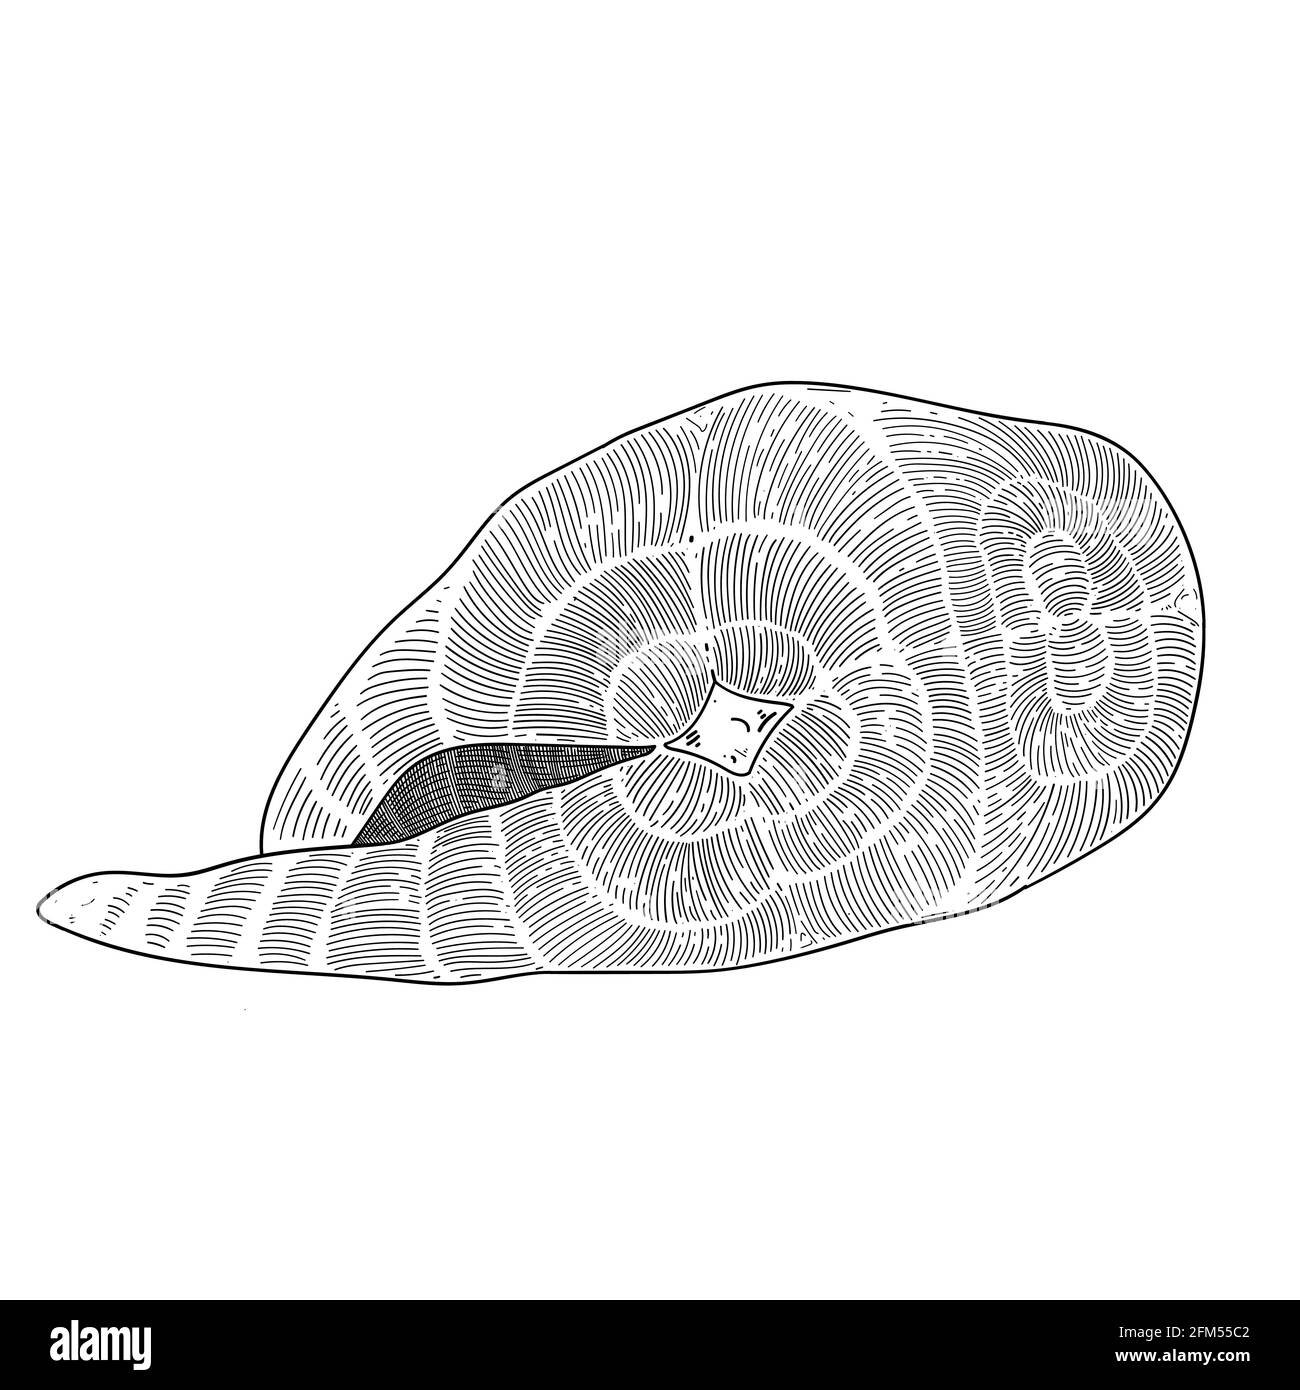 Salmone crudo, illustrazione dell'inchiostro, bistecca di salmone isolata su sfondo bianco, stile di incisione, fetta di carne di pesce, disegno bianco e nero Illustrazione Vettoriale